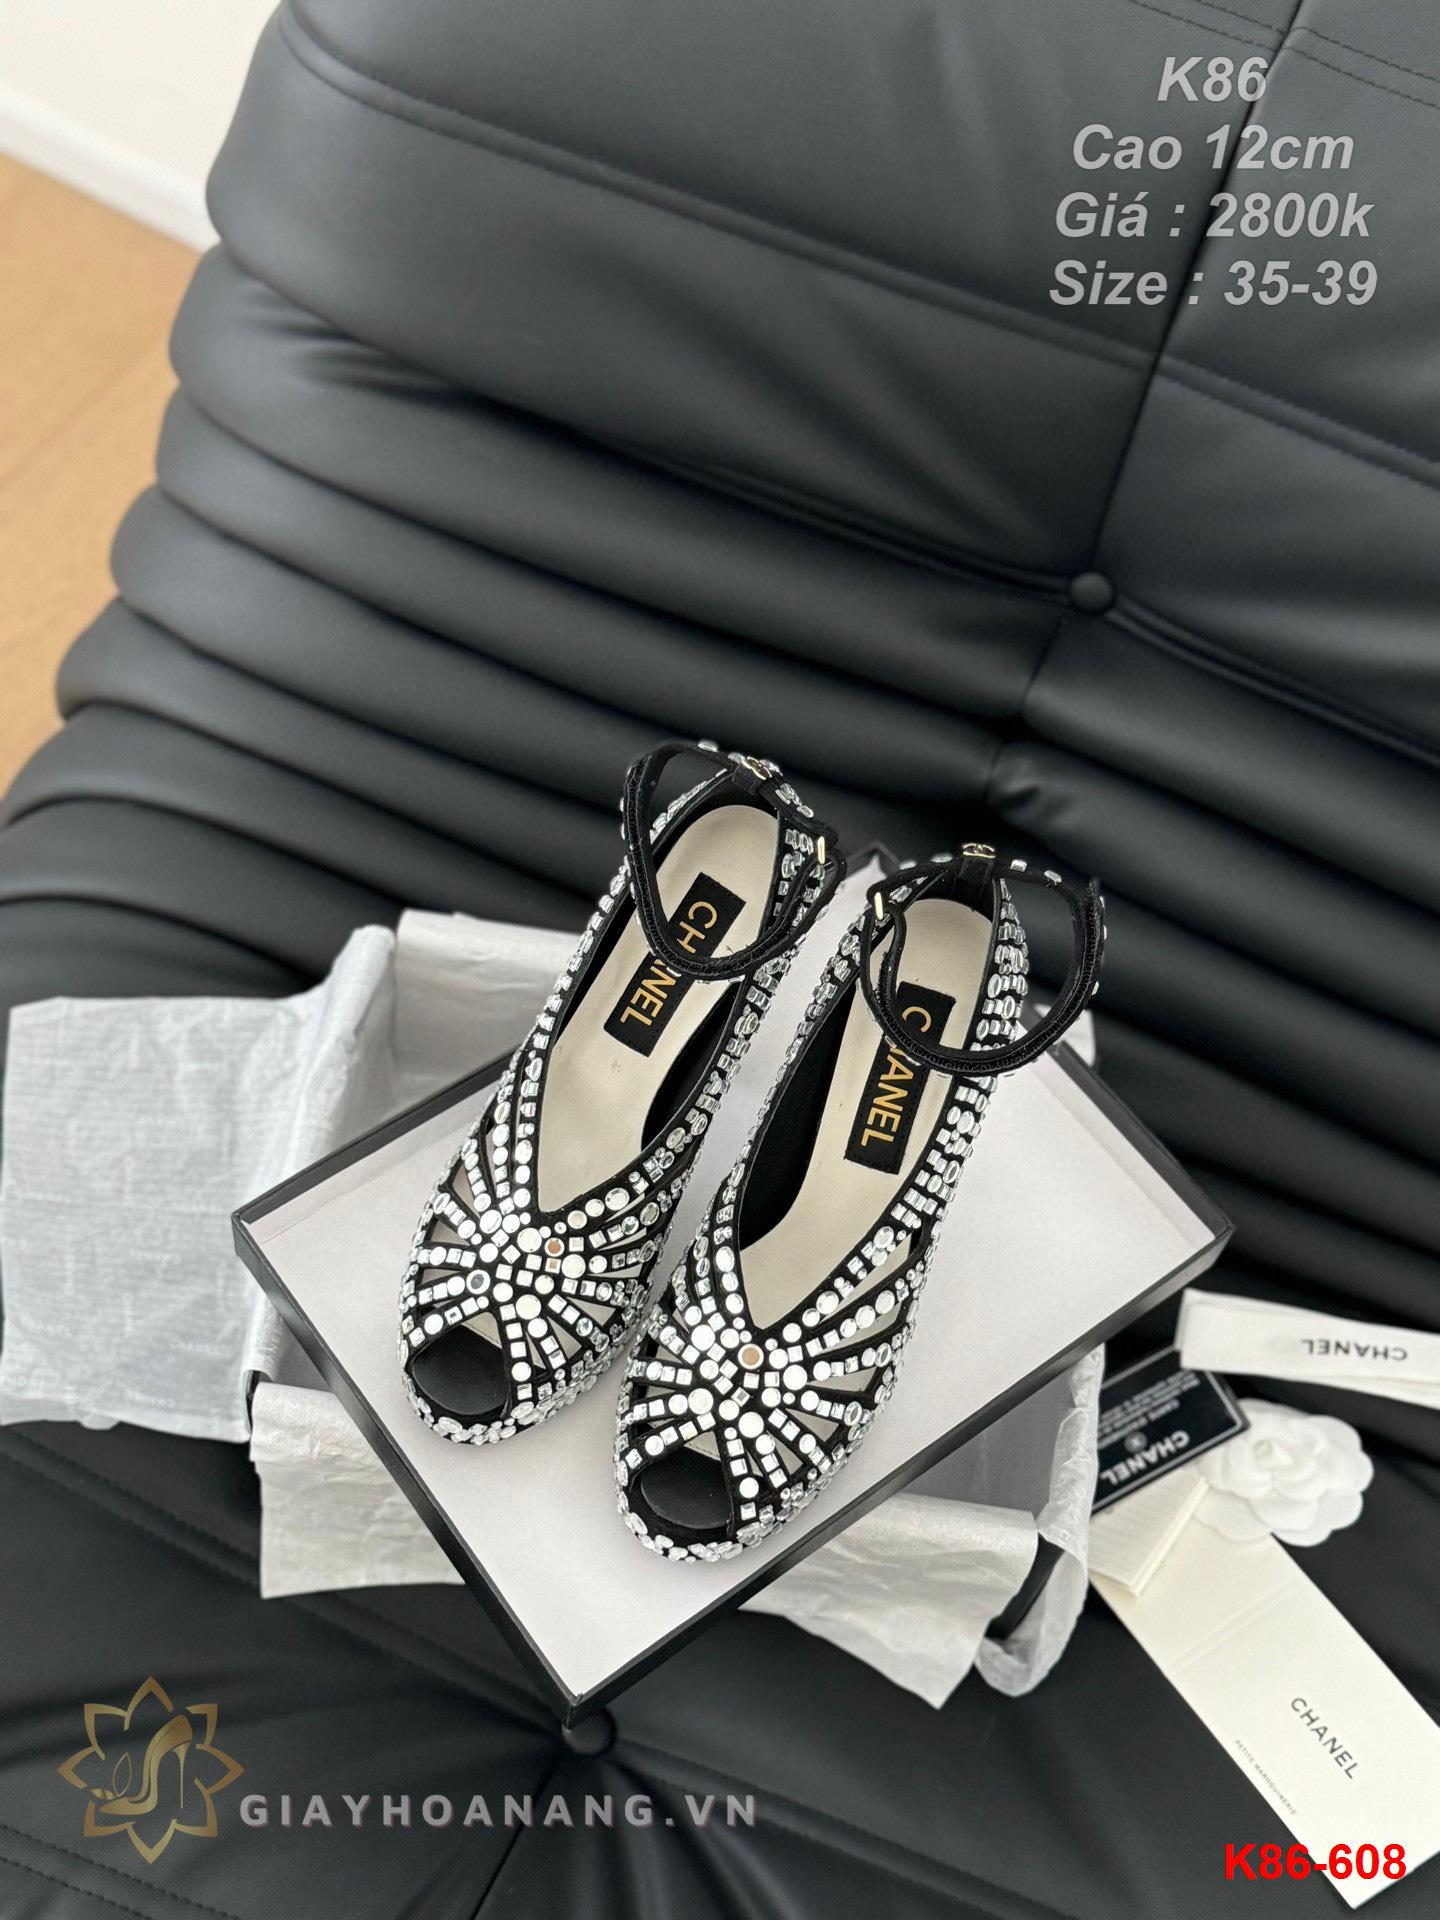 K86-608 Chanel sandal cao gót 12cm siêu cấp